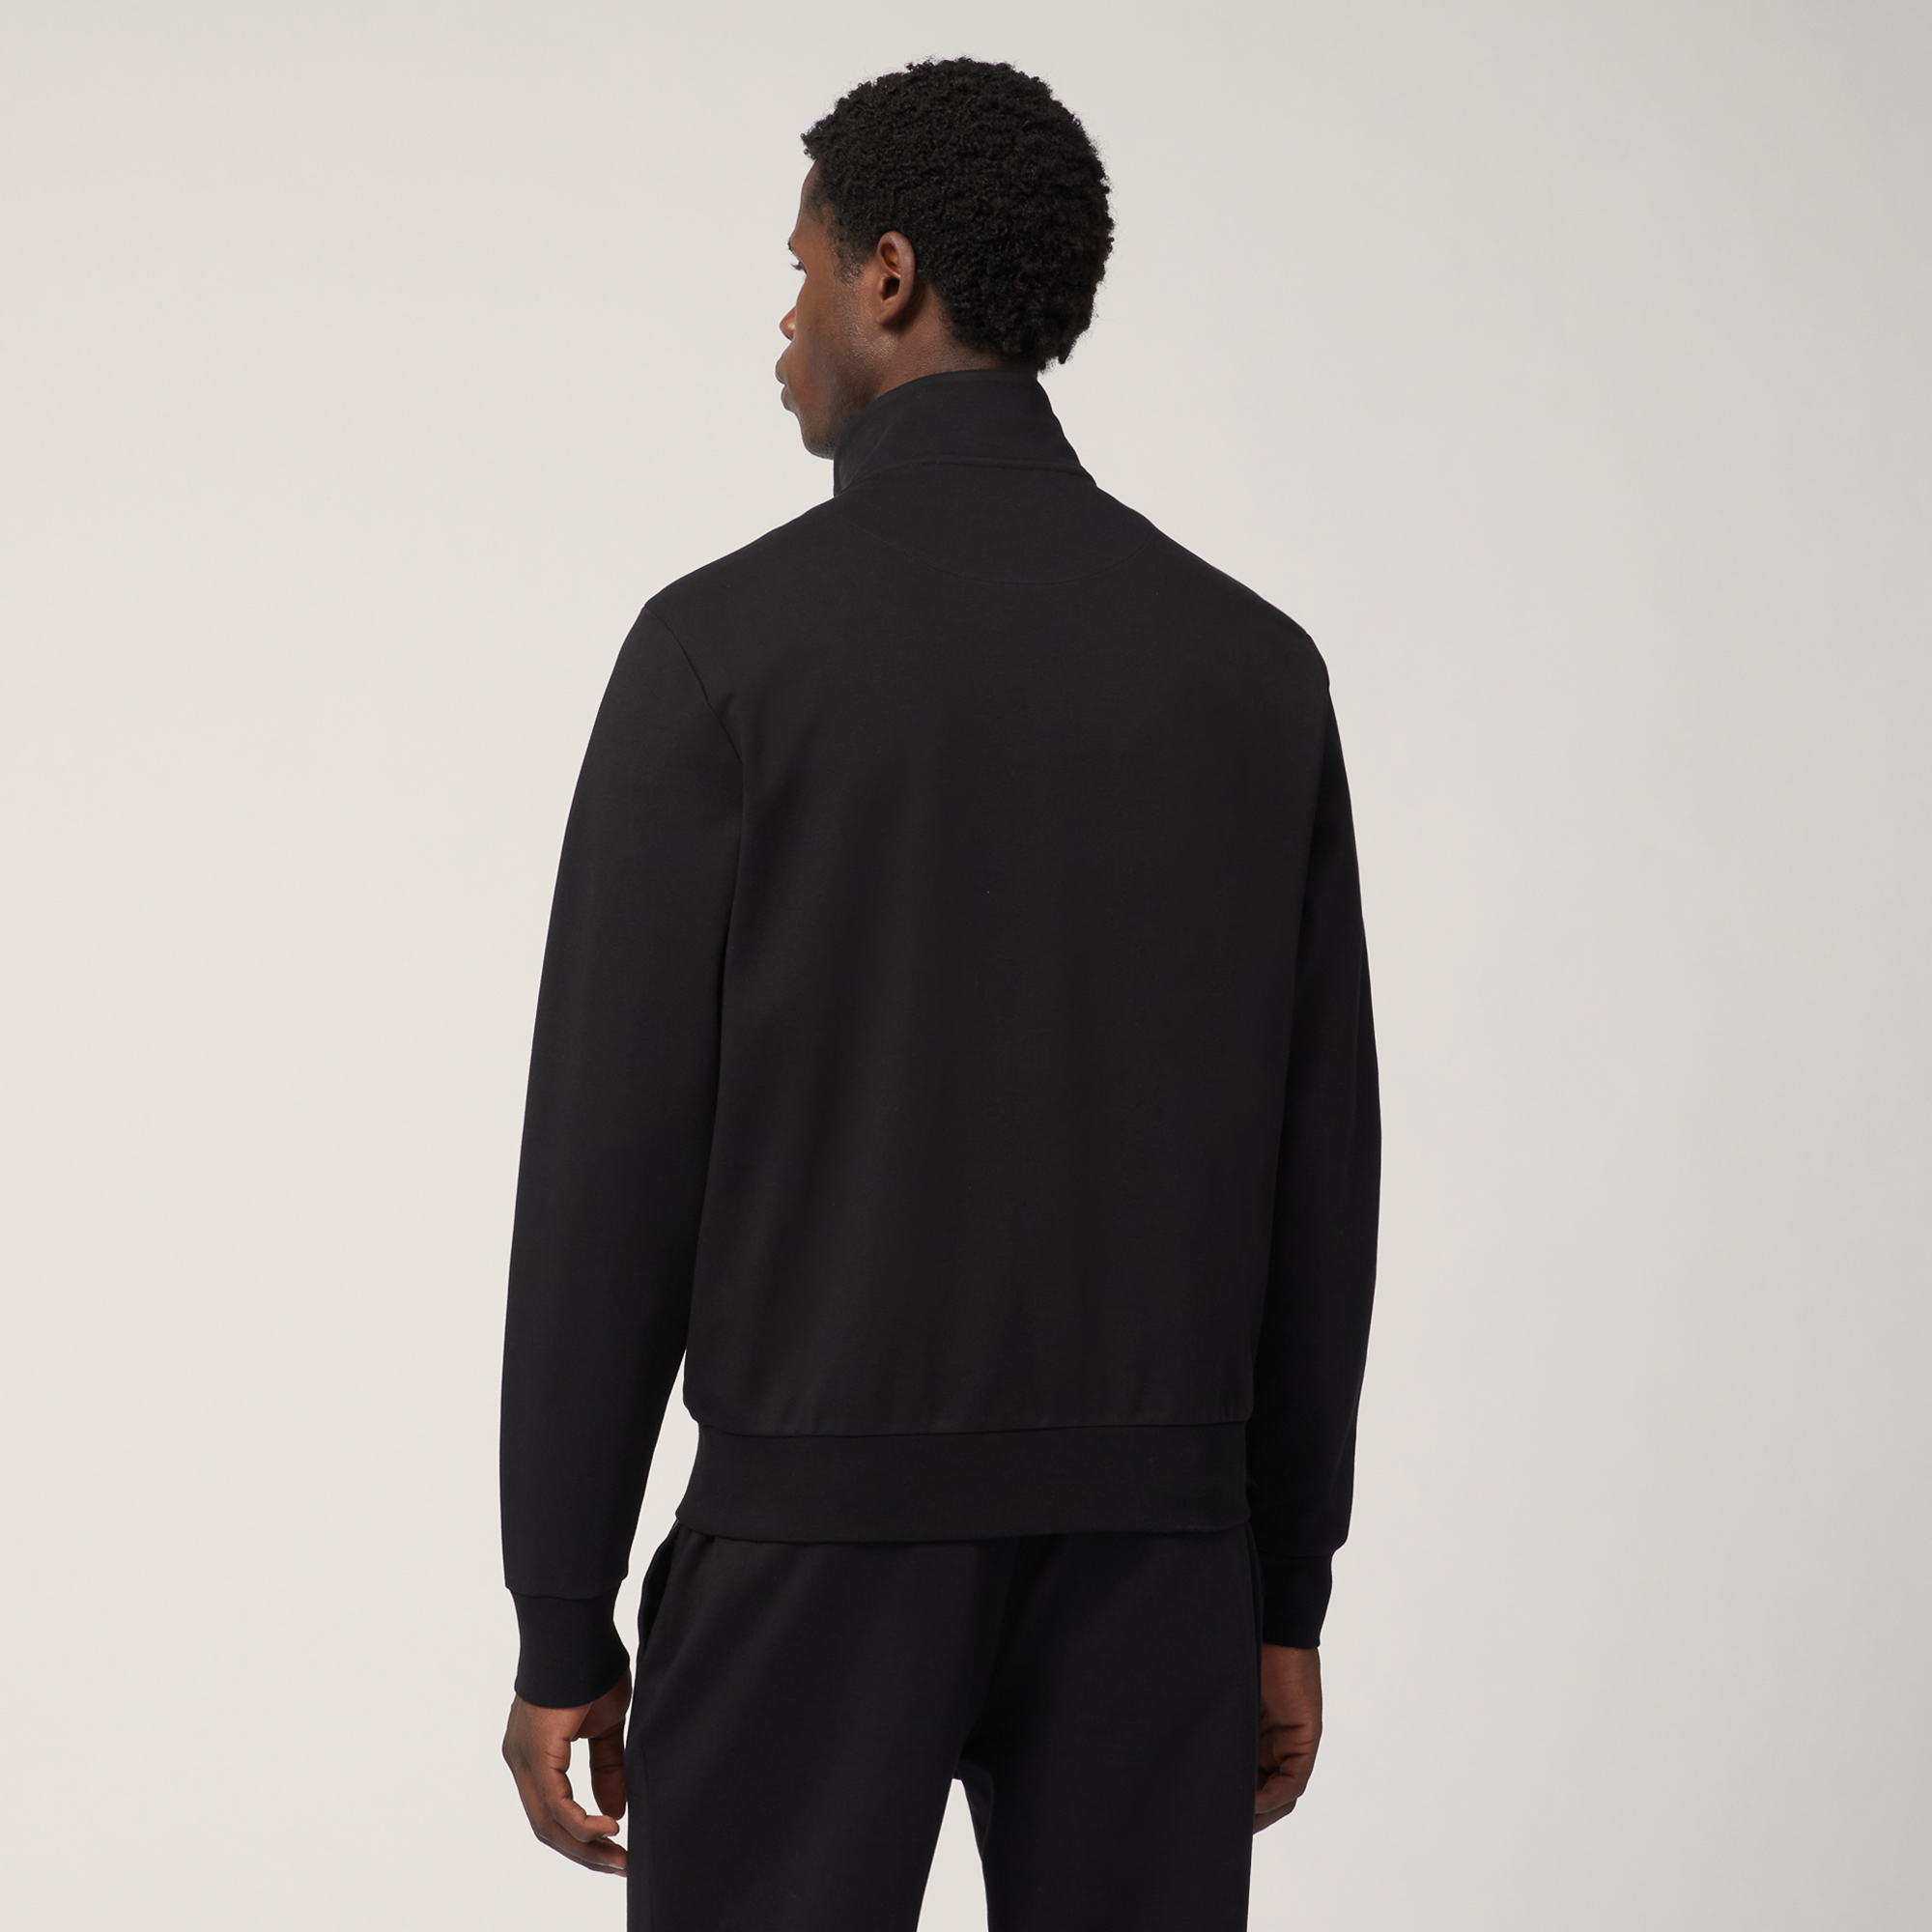 Sweatshirt aus Baumwolle mit durchgehendem Reißverschluss und verschweißten Details, Schwarz, large image number 1